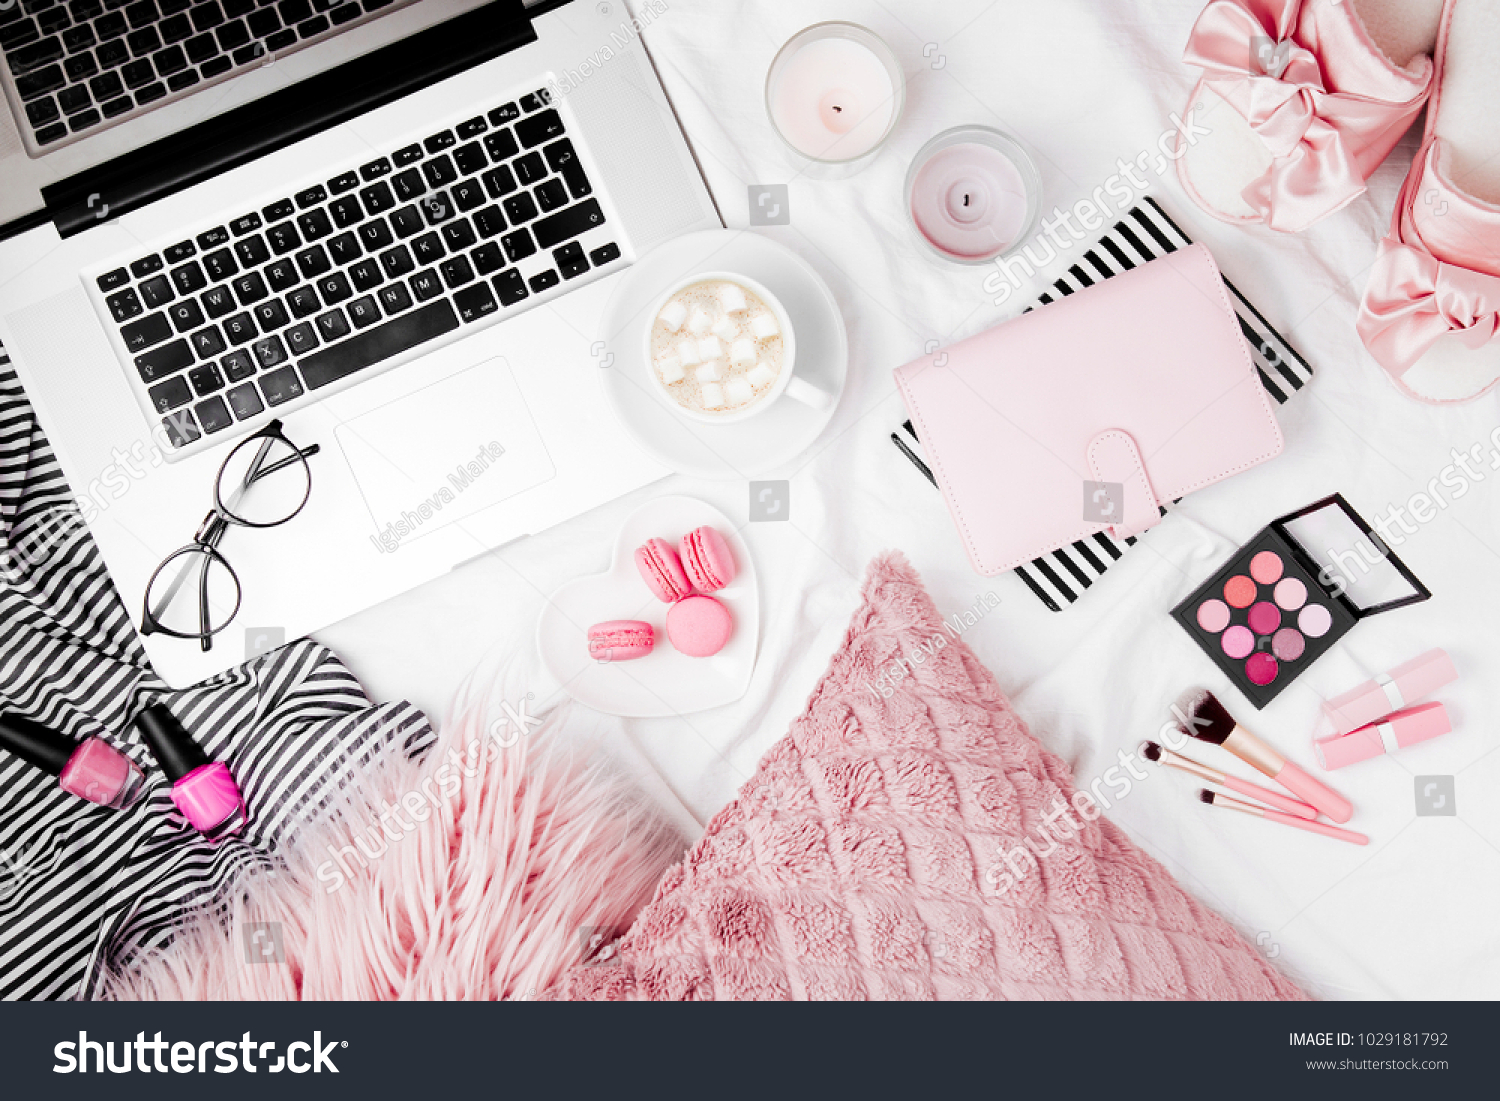 ベッドにノートパソコンと女性のアクセサリーを持つファッションブロガーのワークスペース 平面図 平面図 の写真素材 今すぐ編集